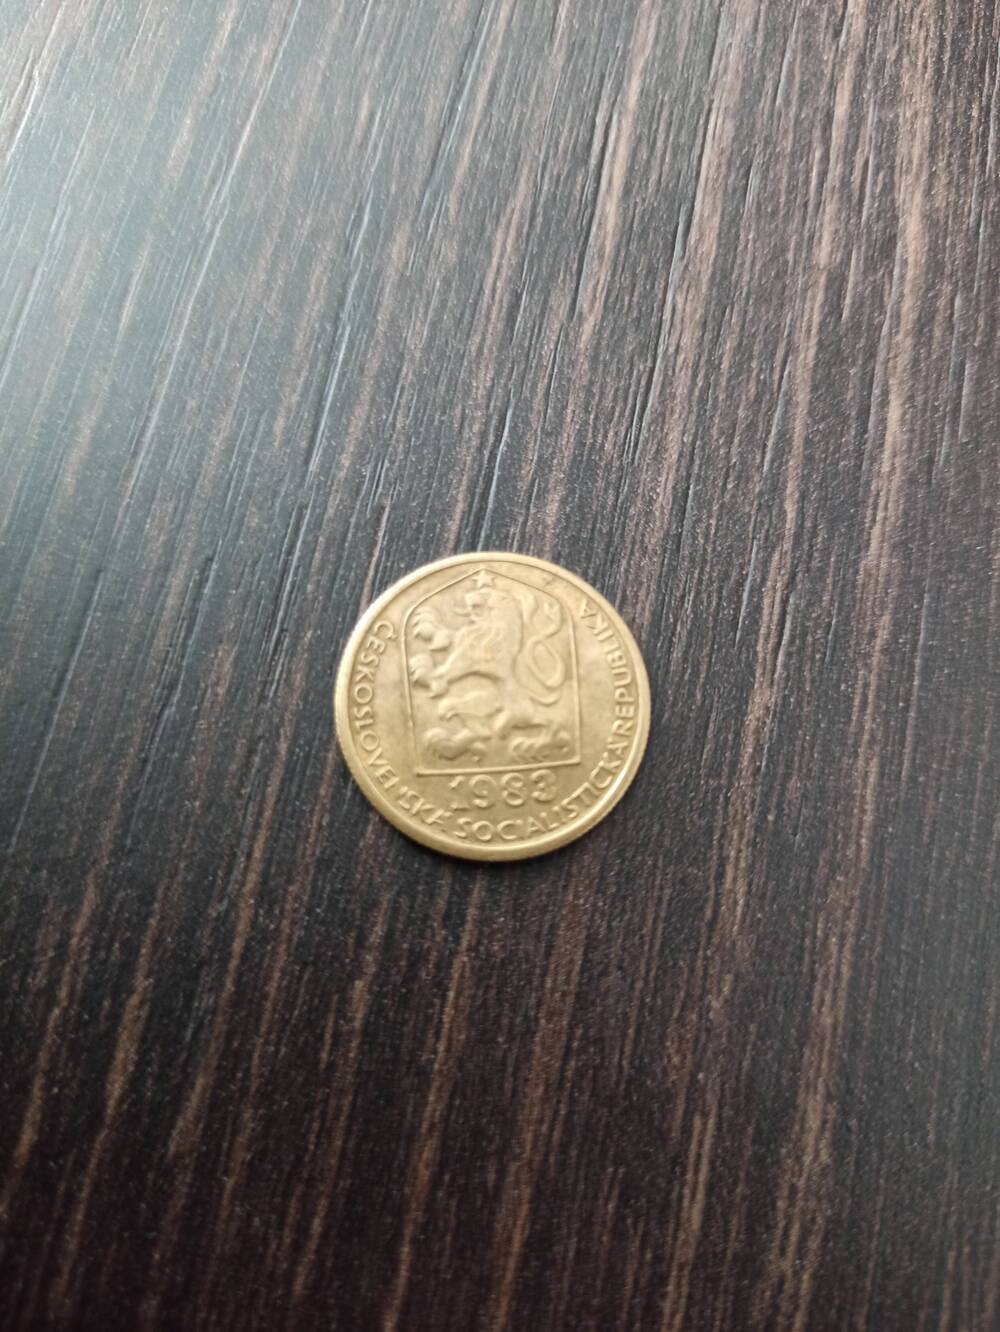 Нумизматика. Монета  Чехии достоинством 20 h 1983 года.